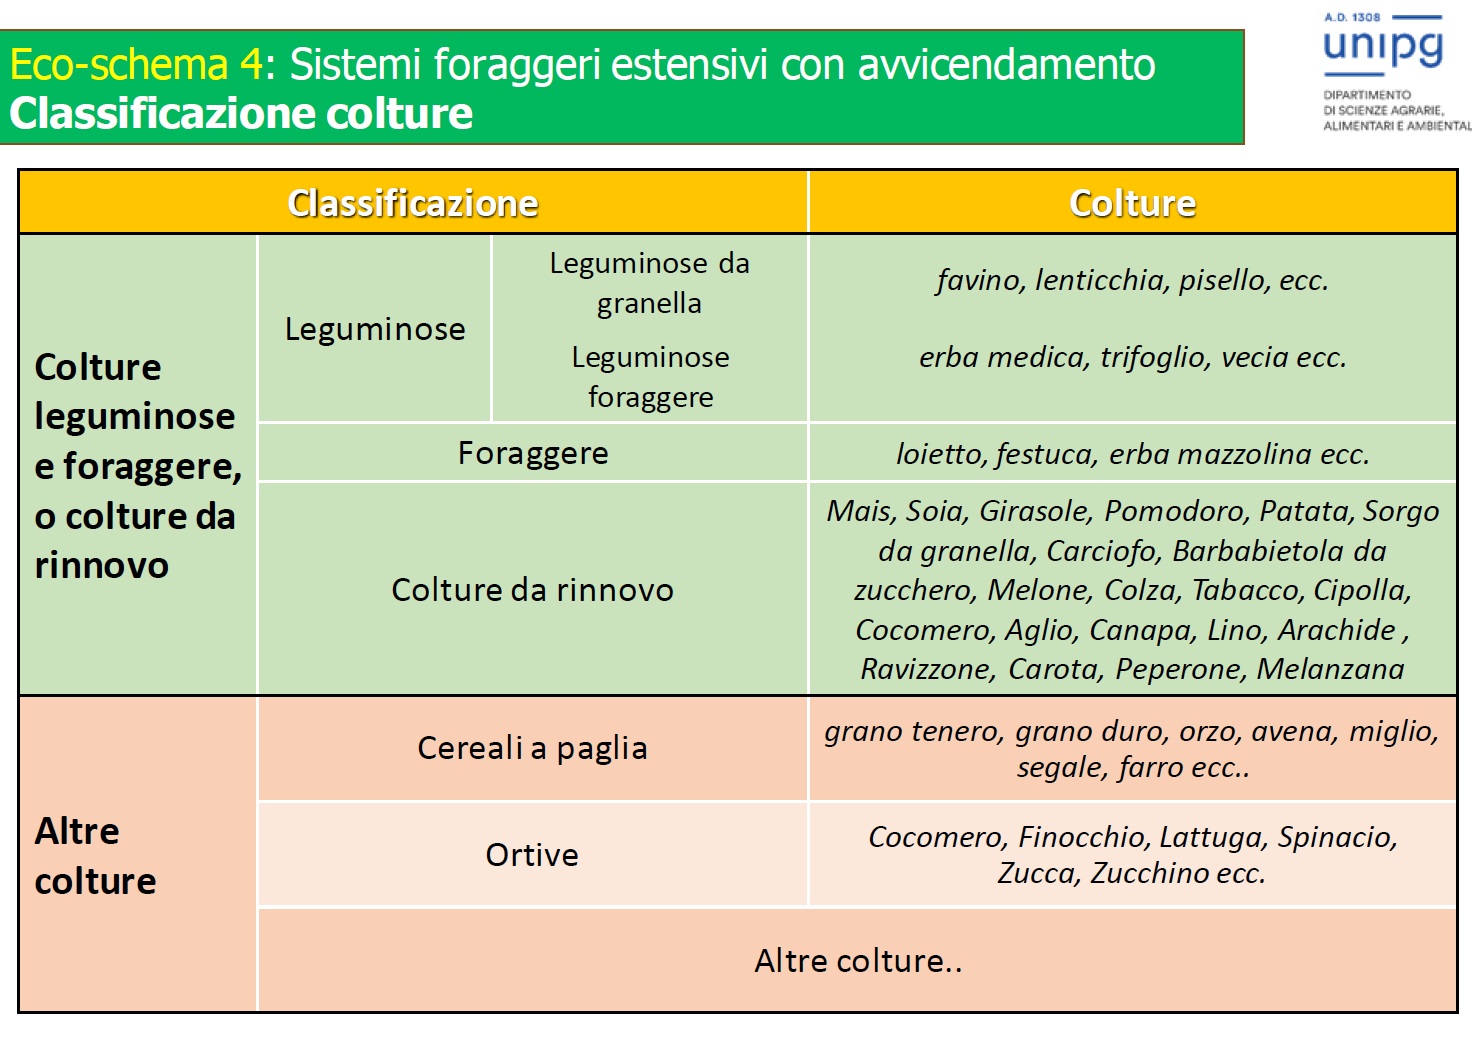 Ecoschema 4: sistemi foraggeri estensivi con avvicendamento. Classificazione colture